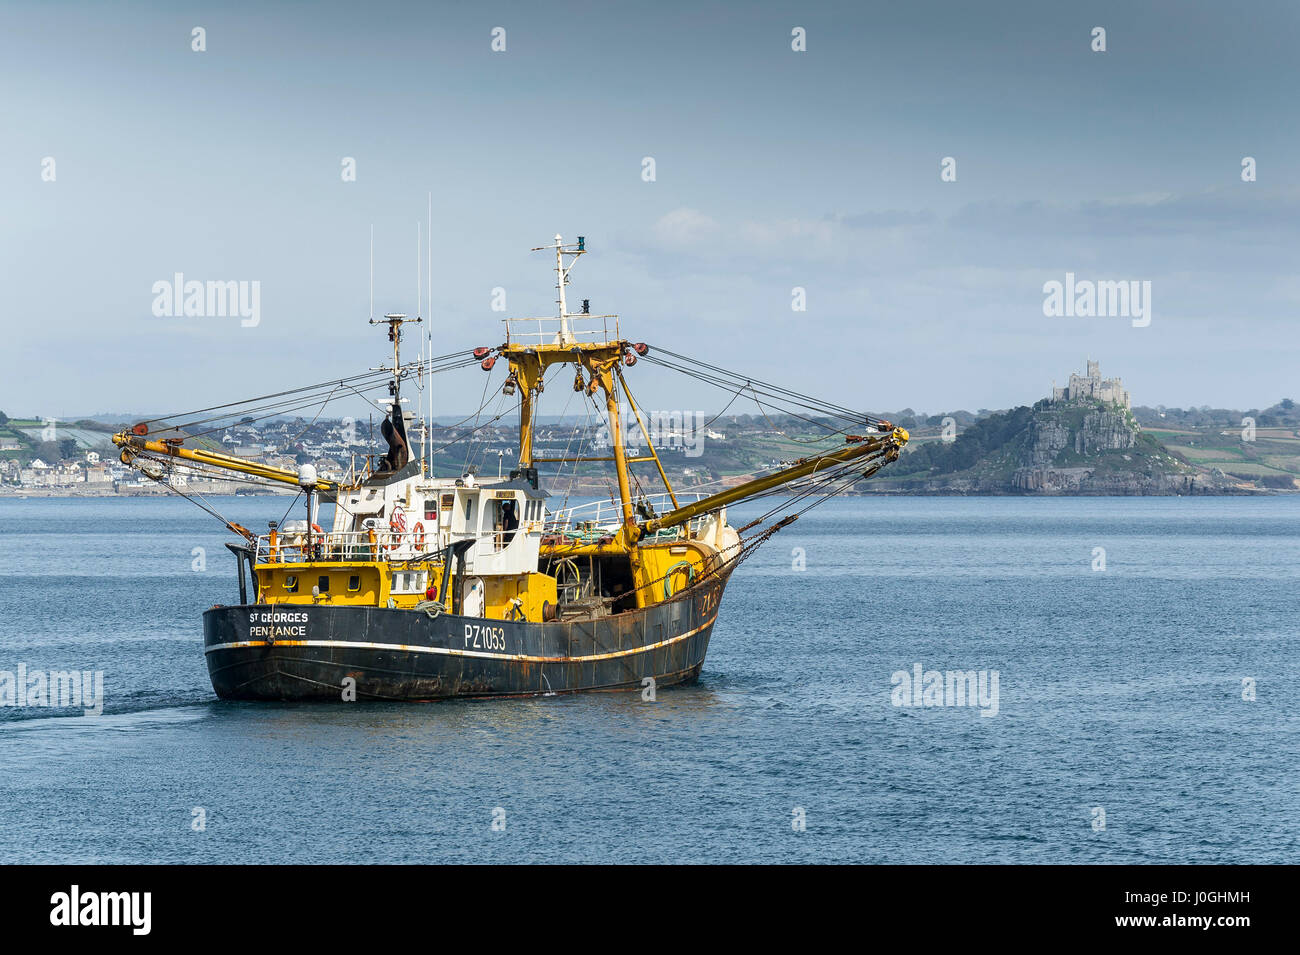 Chalutier de pêche en laissant l'industrie de la pêche bateau de pêche bateau de pêche Départ PZ1052 St Georges côte mer scène côtière Newlyn Banque D'Images